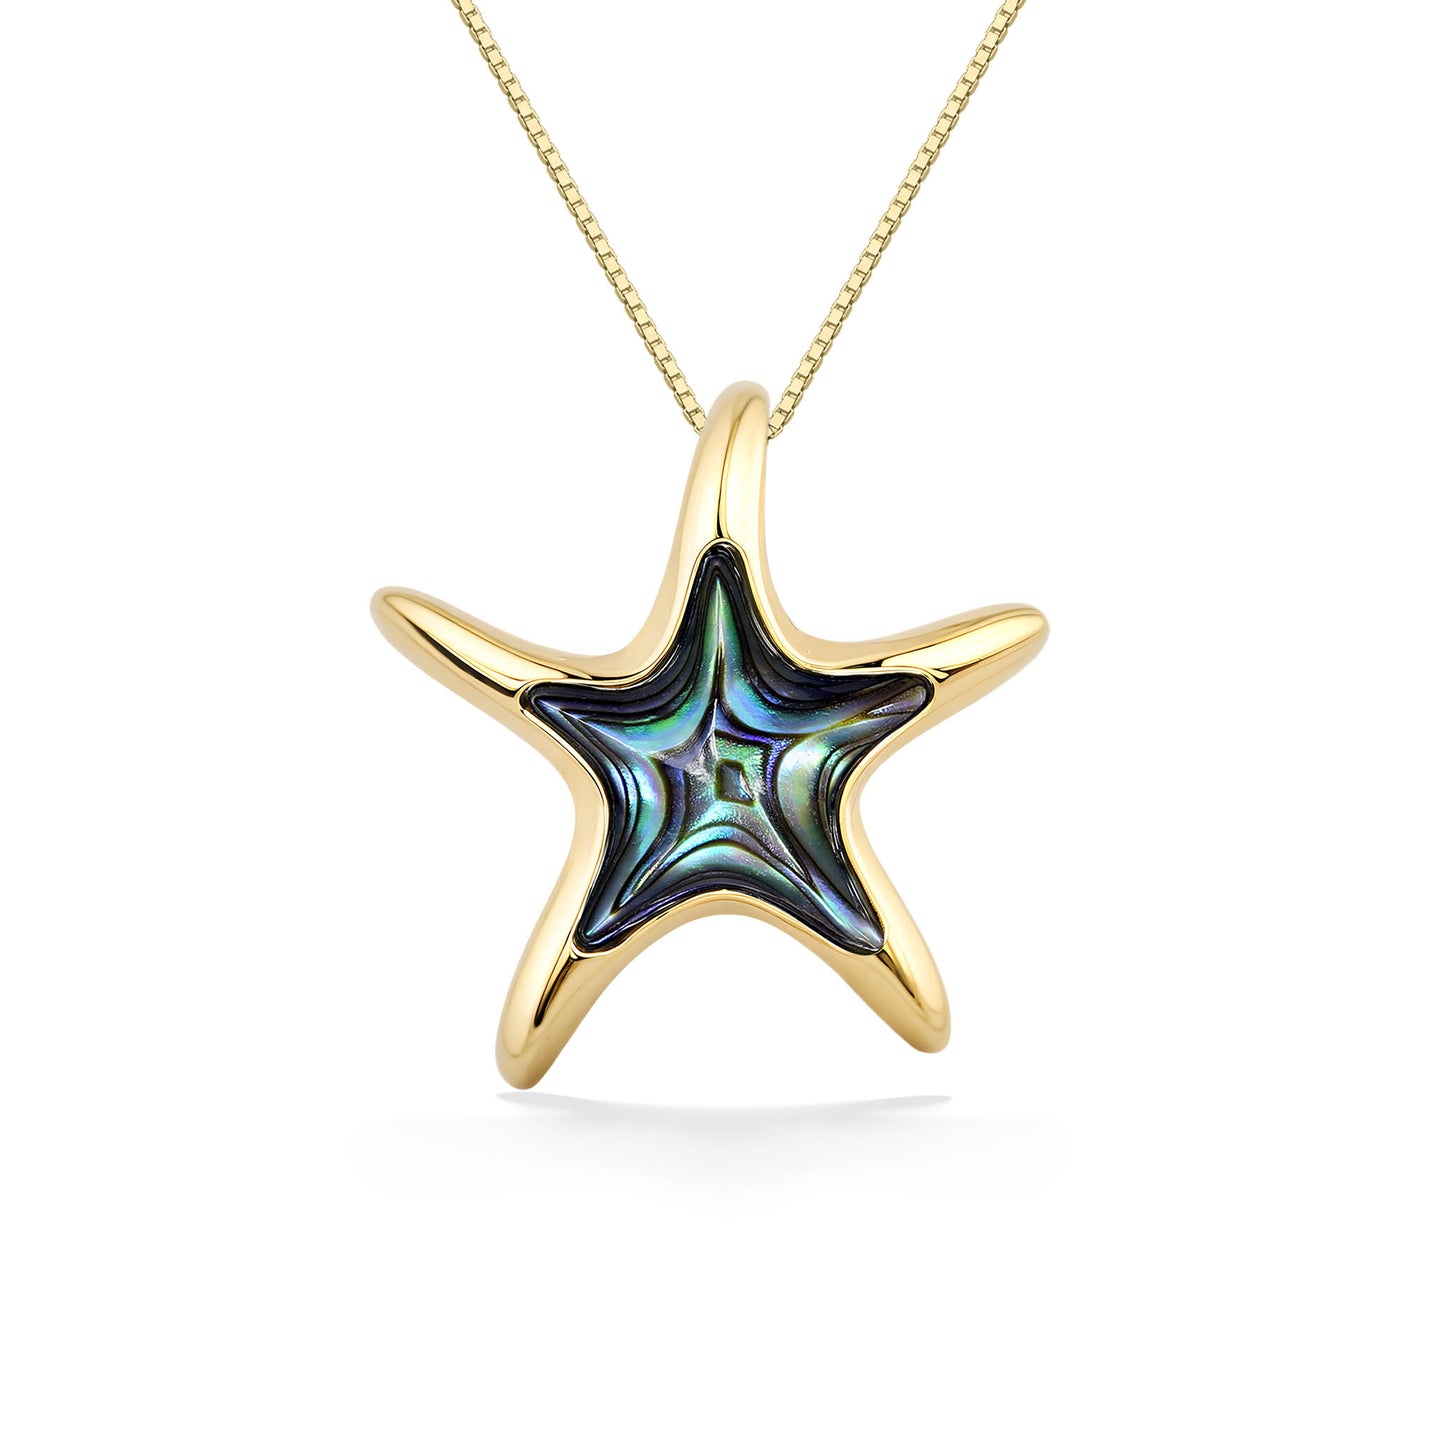 43251 - 14K Yellow Gold - Starfish Pendant